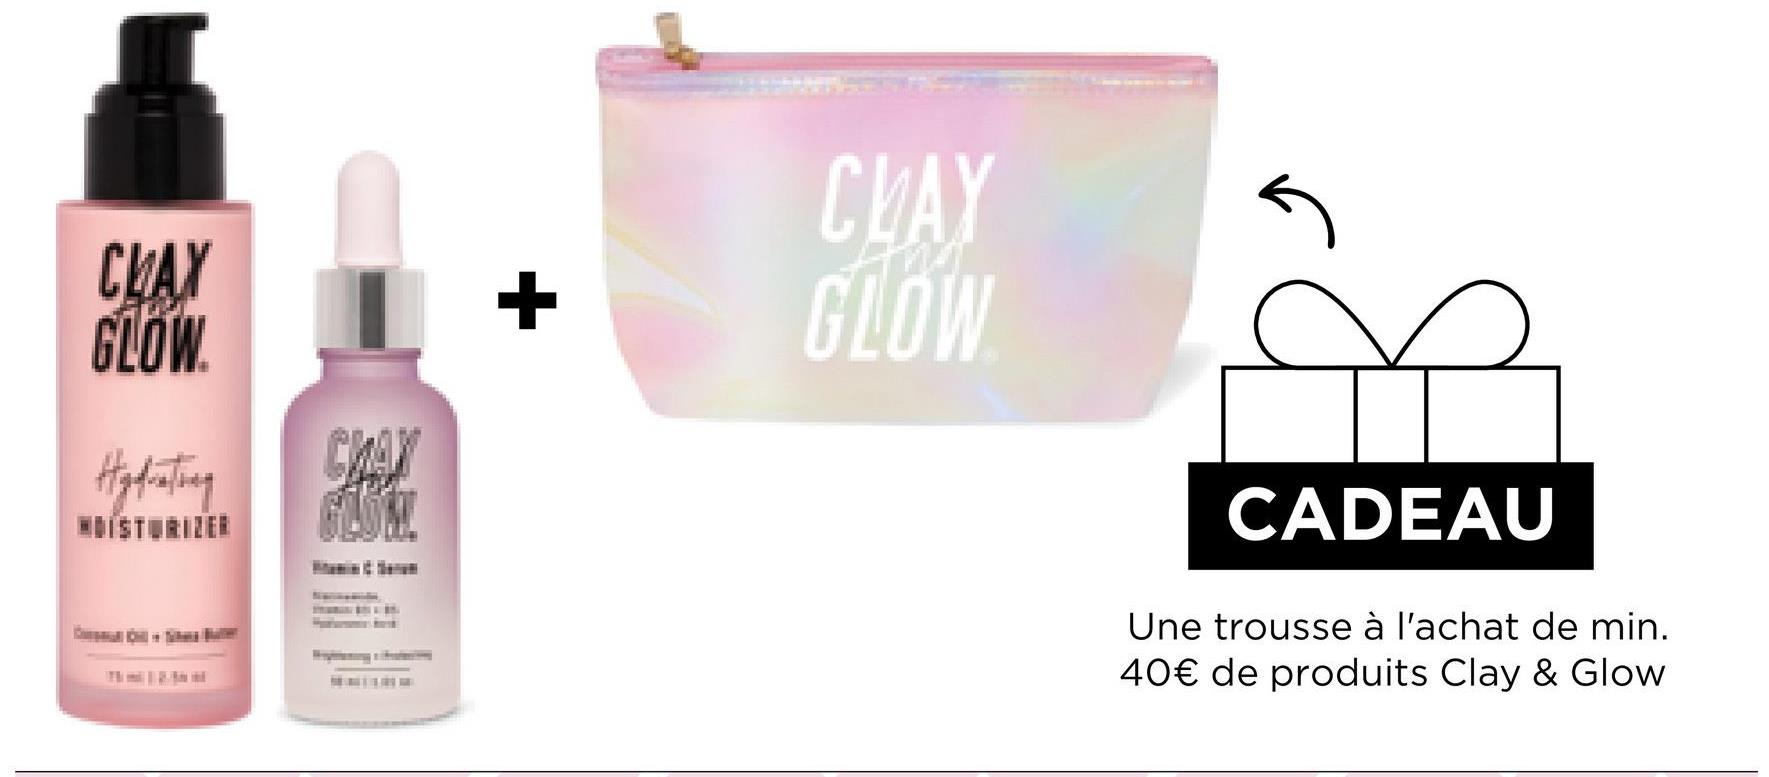 CLAY
GLOW
Hydrating
CHAX
GLÖM!
+
CLAY
GLOW
CADEAU
Une trousse à l'achat de min.
40€ de produits Clay & Glow